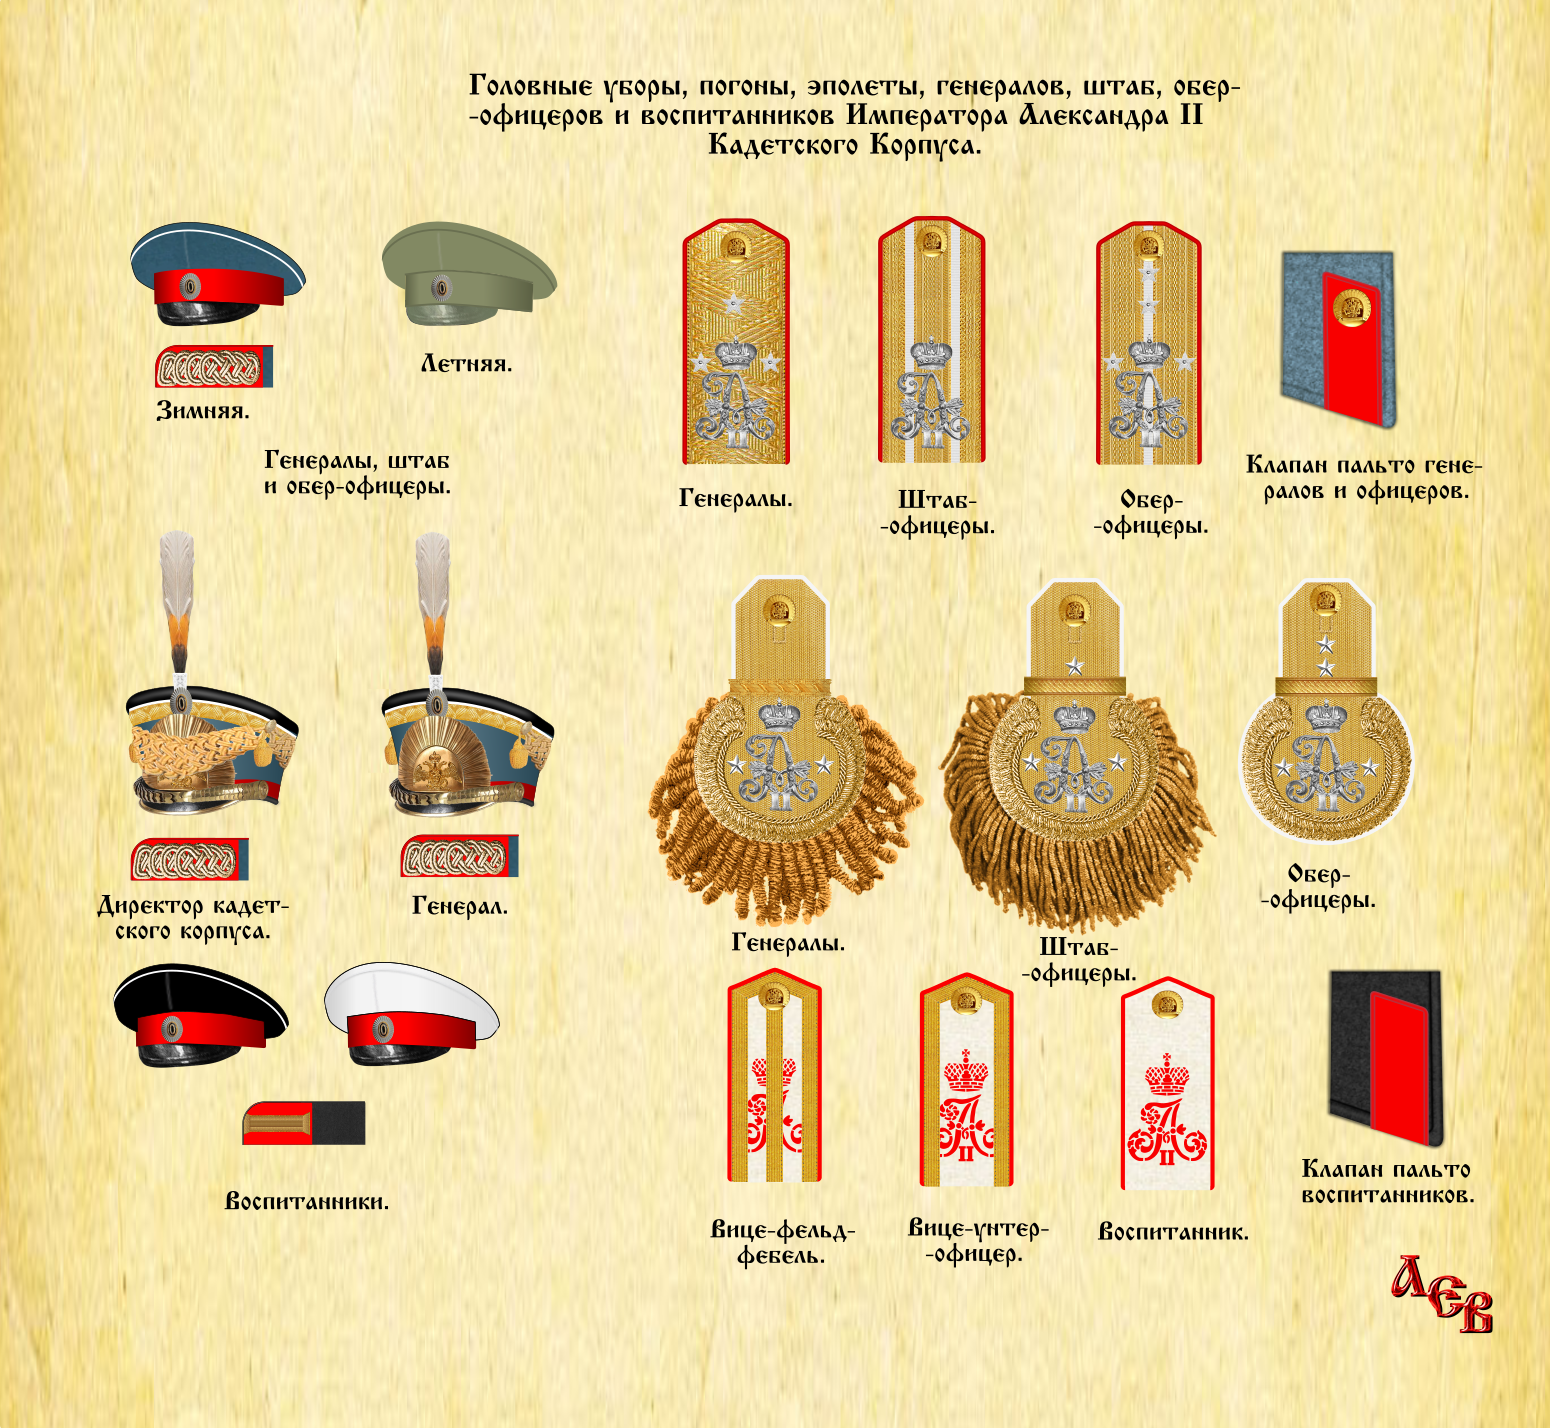 Имп. Александра II Кадетский корпус Погоны